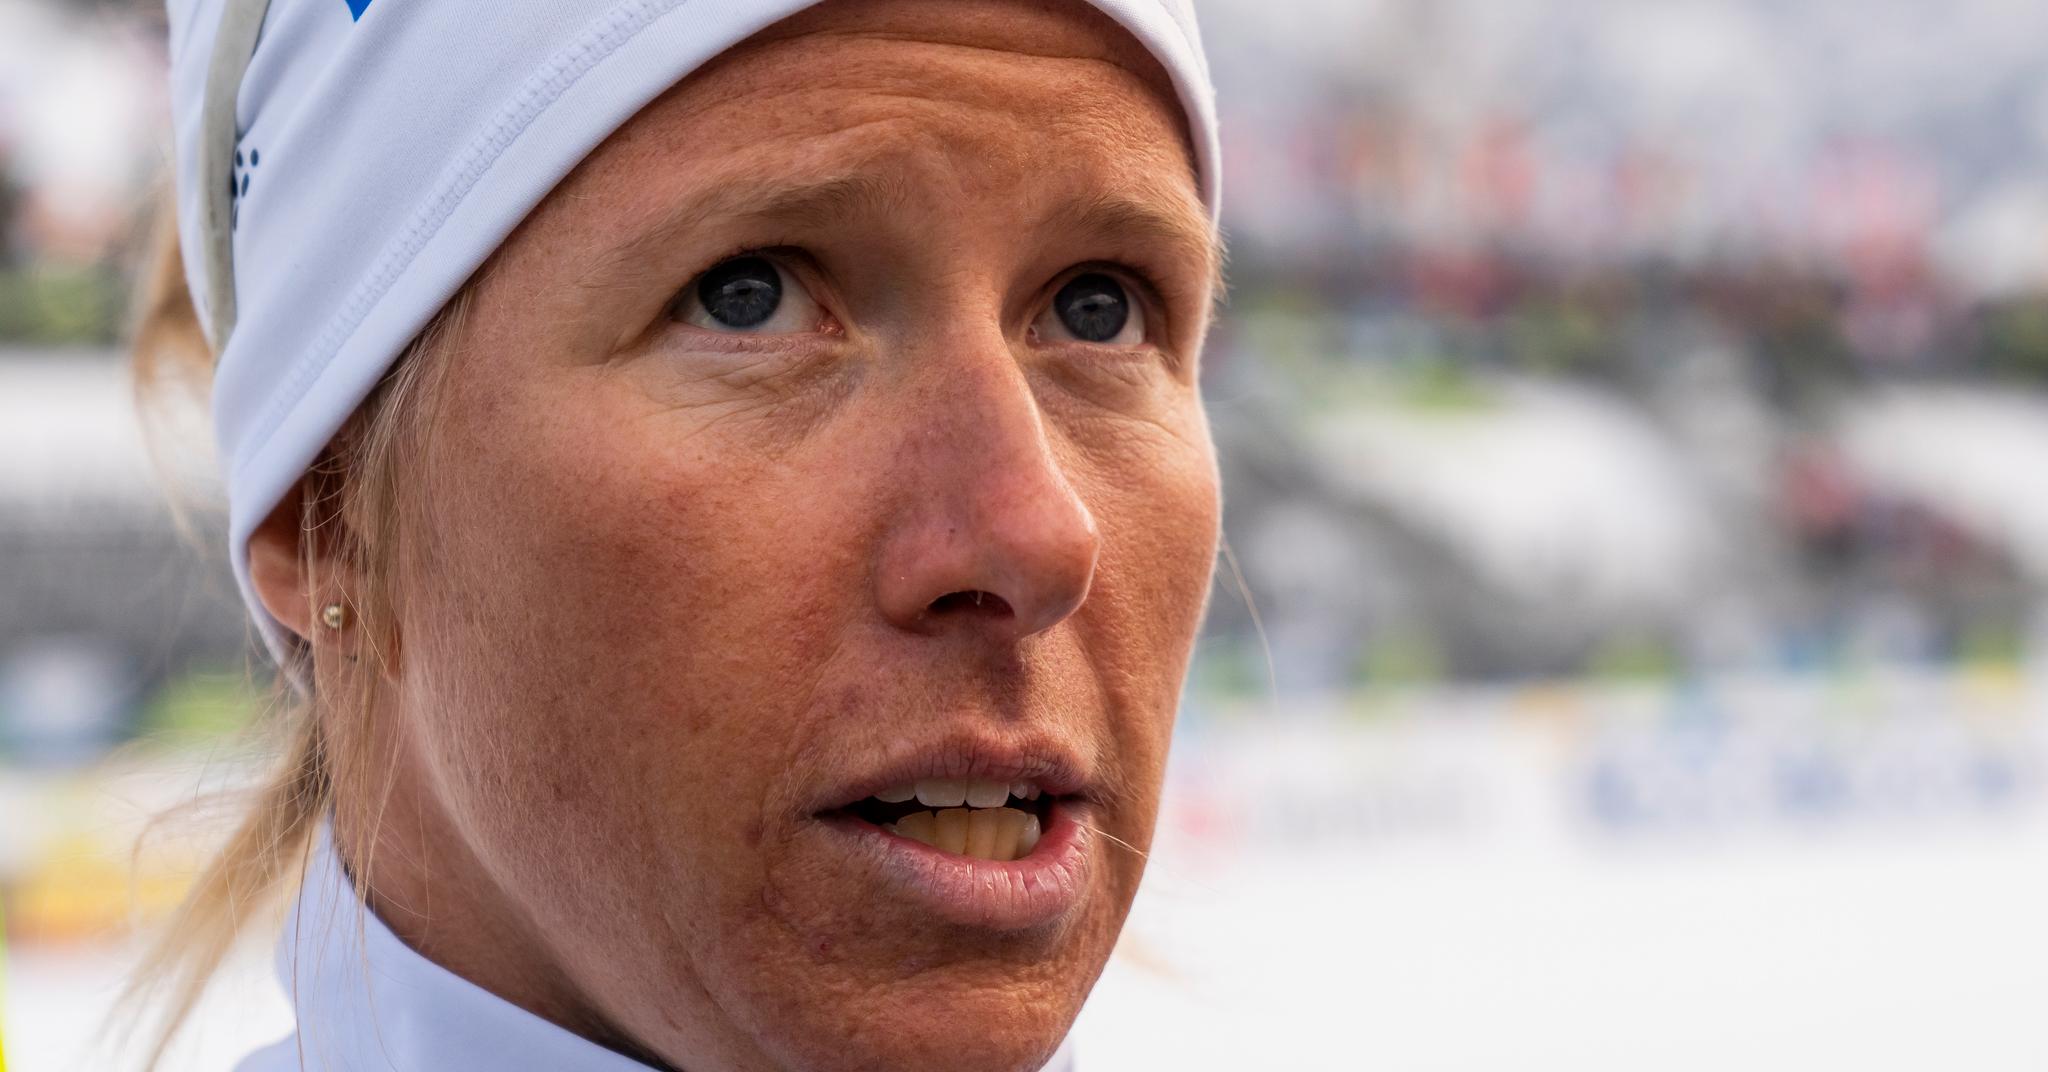 Oppdalsjenta Astrid Øyre Slind blir ikke å se på Tolga. Hun velger langløp fremfor NM-konkurransene.